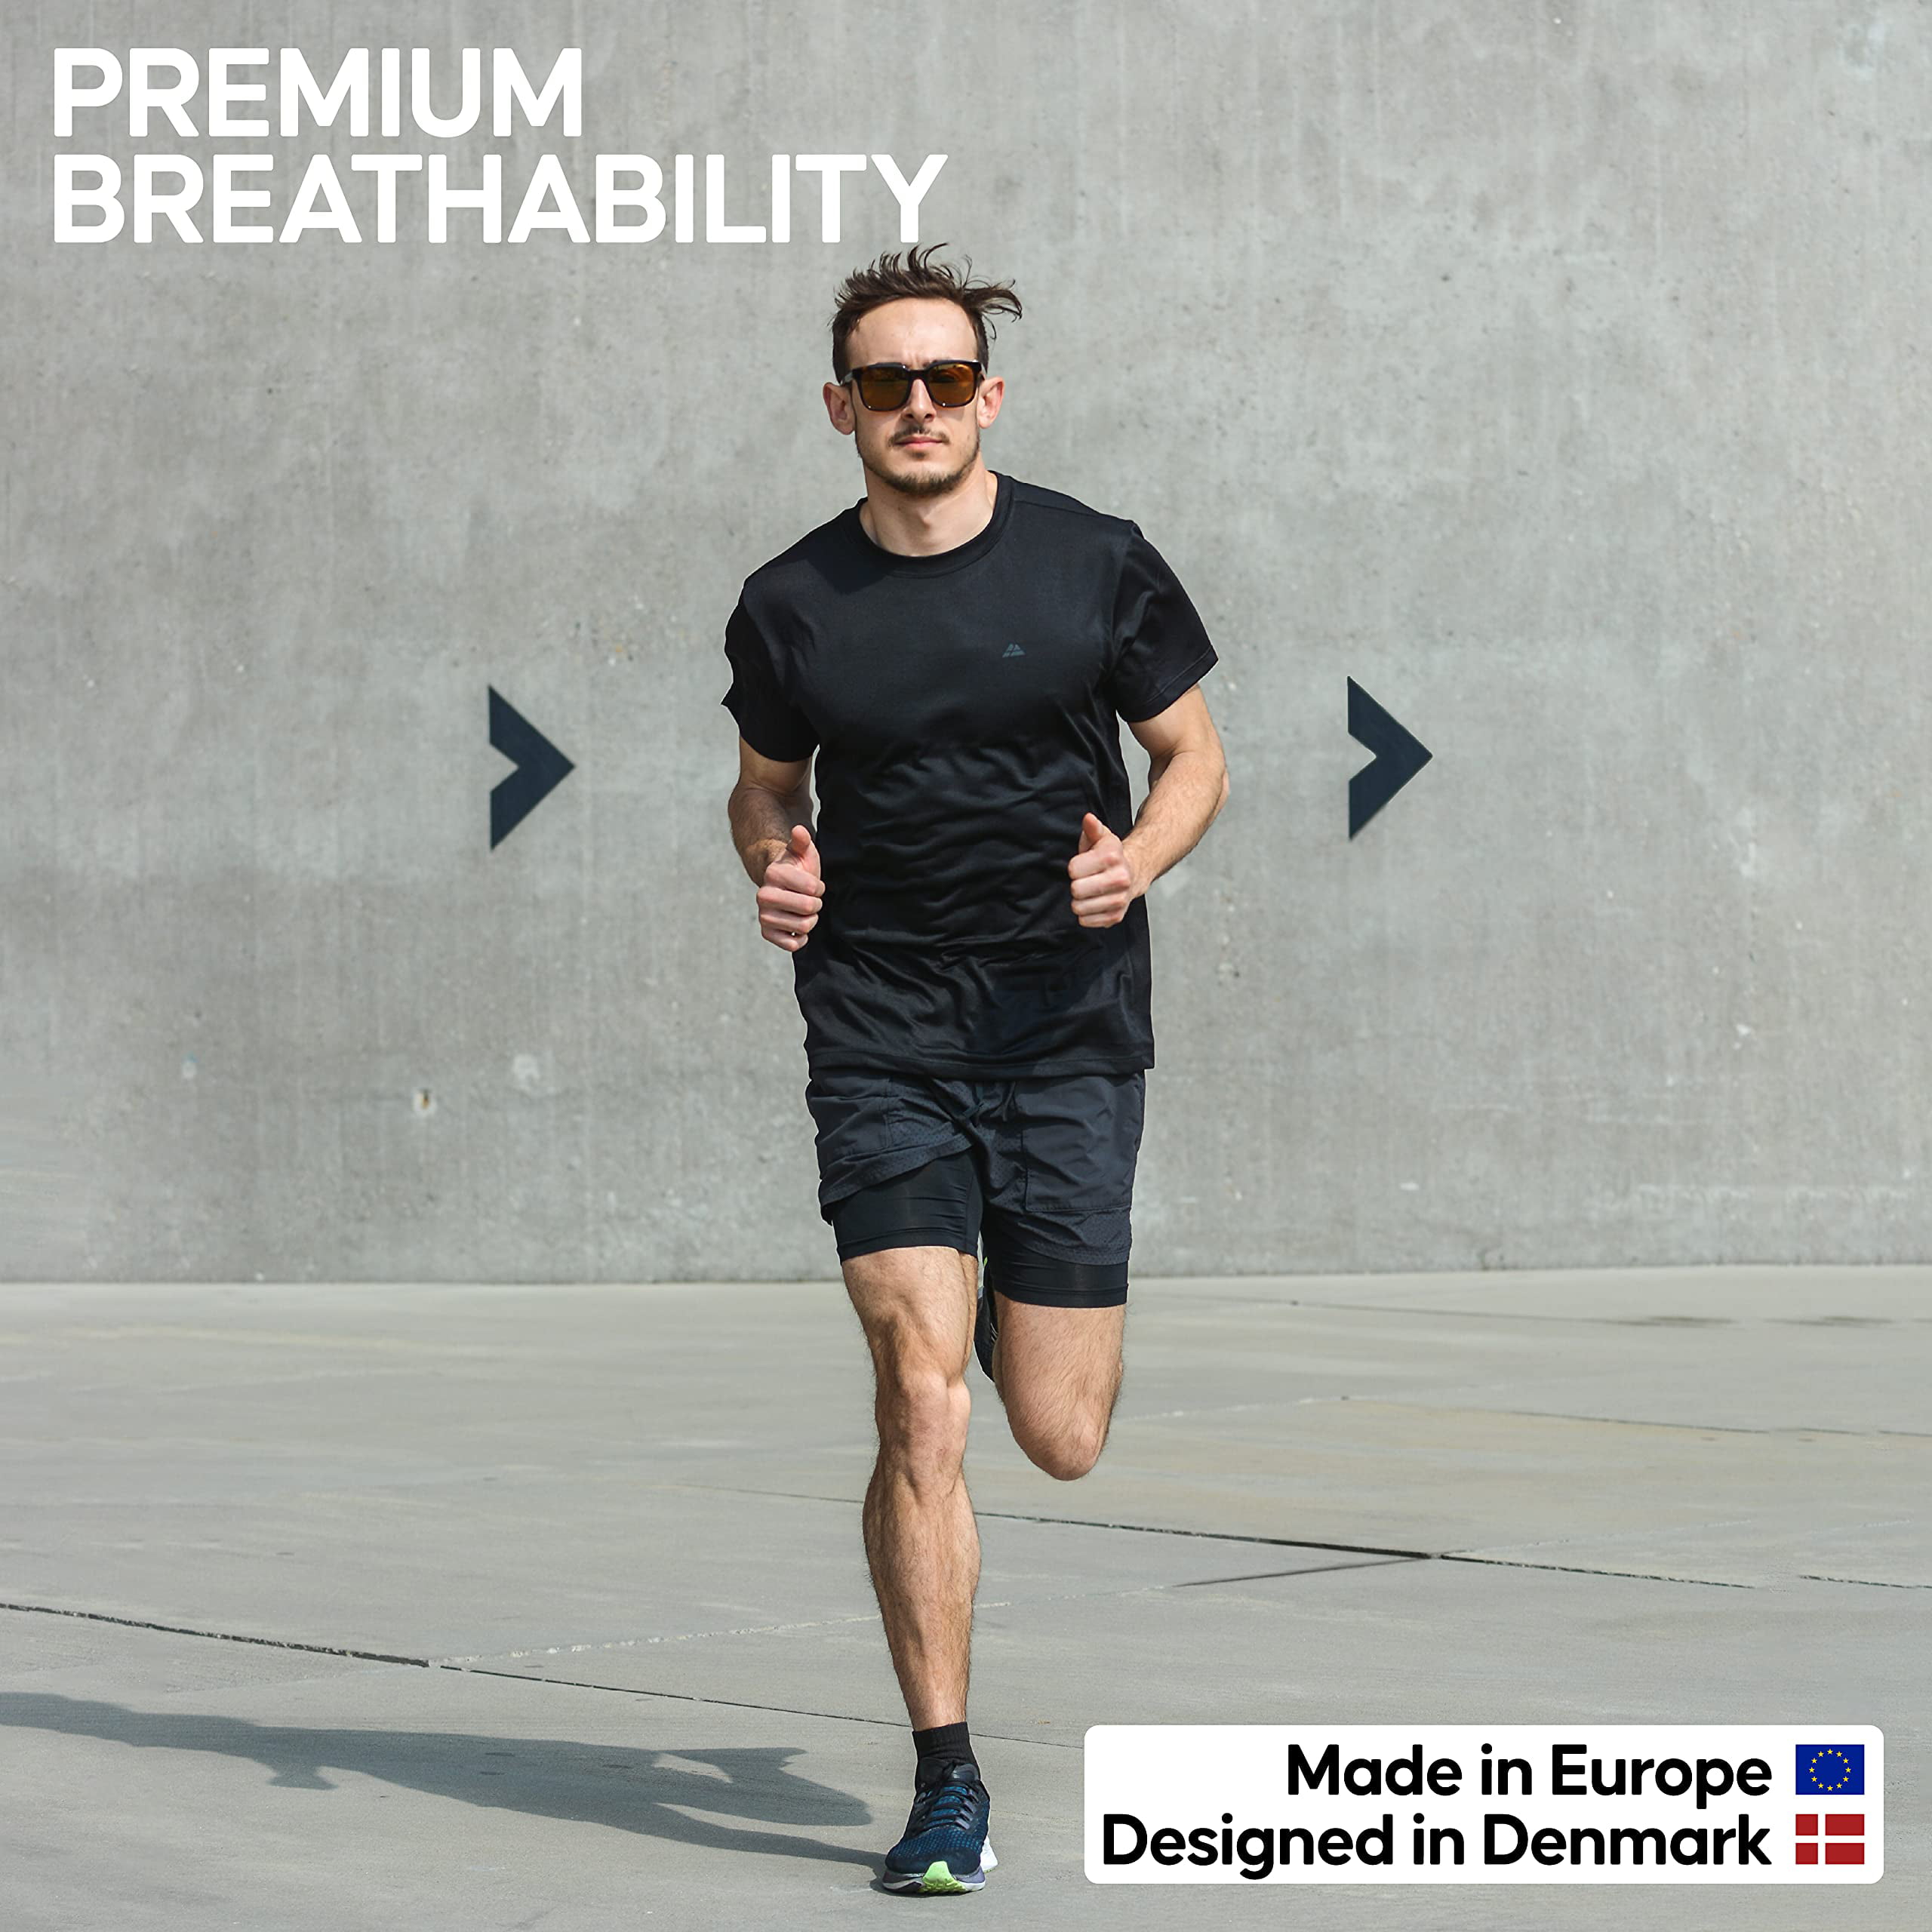 Sports DANISH ENDURANCE Quarter Athletic Socks for Men & Women 3-Pack Performance Running Gym Made in EU Breatheable 